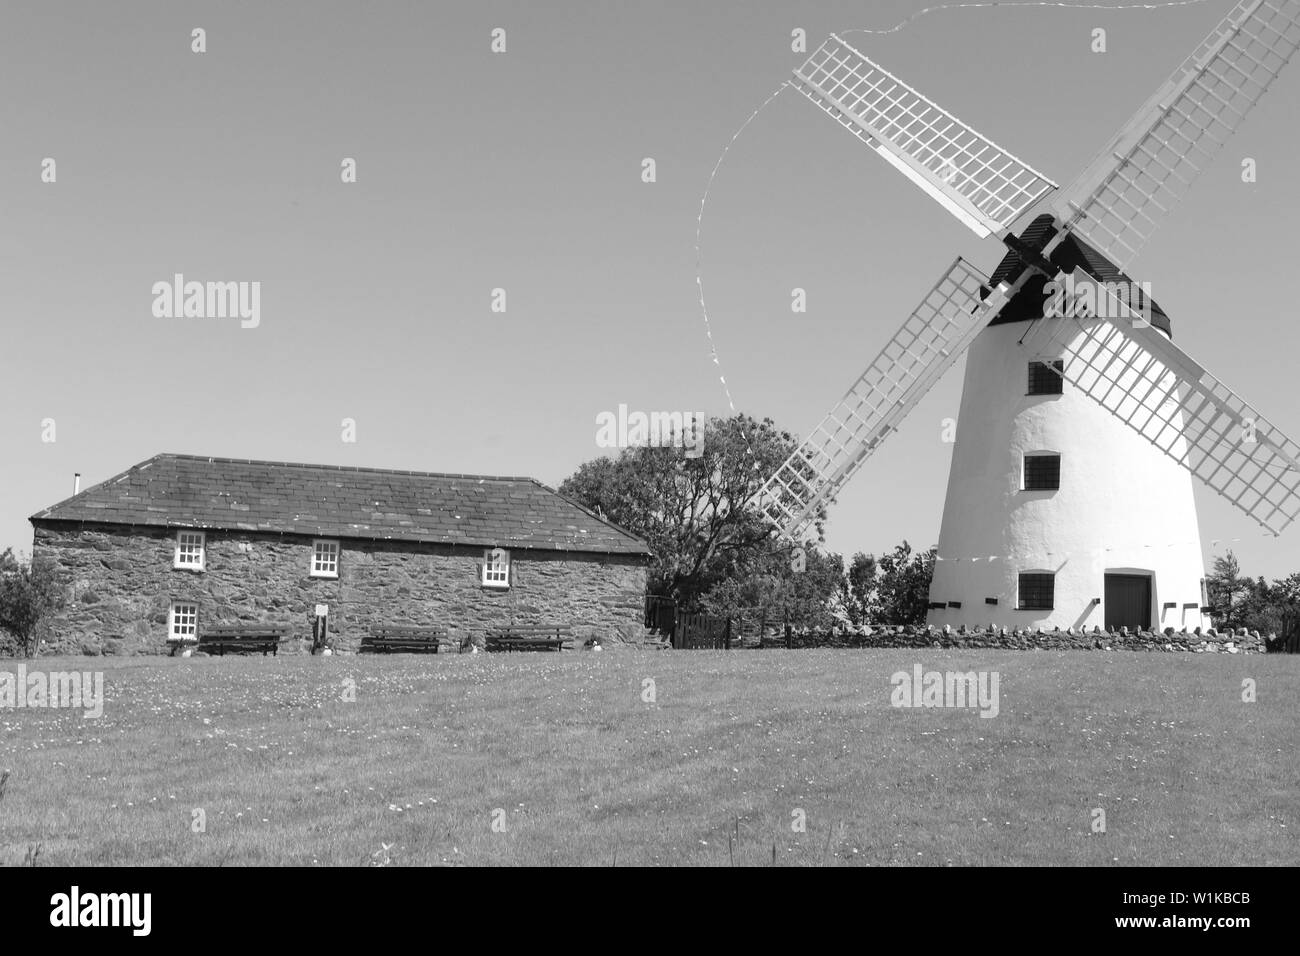 Moulin à vent llynnon Melin llanddeusant Anglesey, Llynnon moulin a été construit en 1775 et est le seul moulin à vent de travail au Pays de Galles Banque D'Images